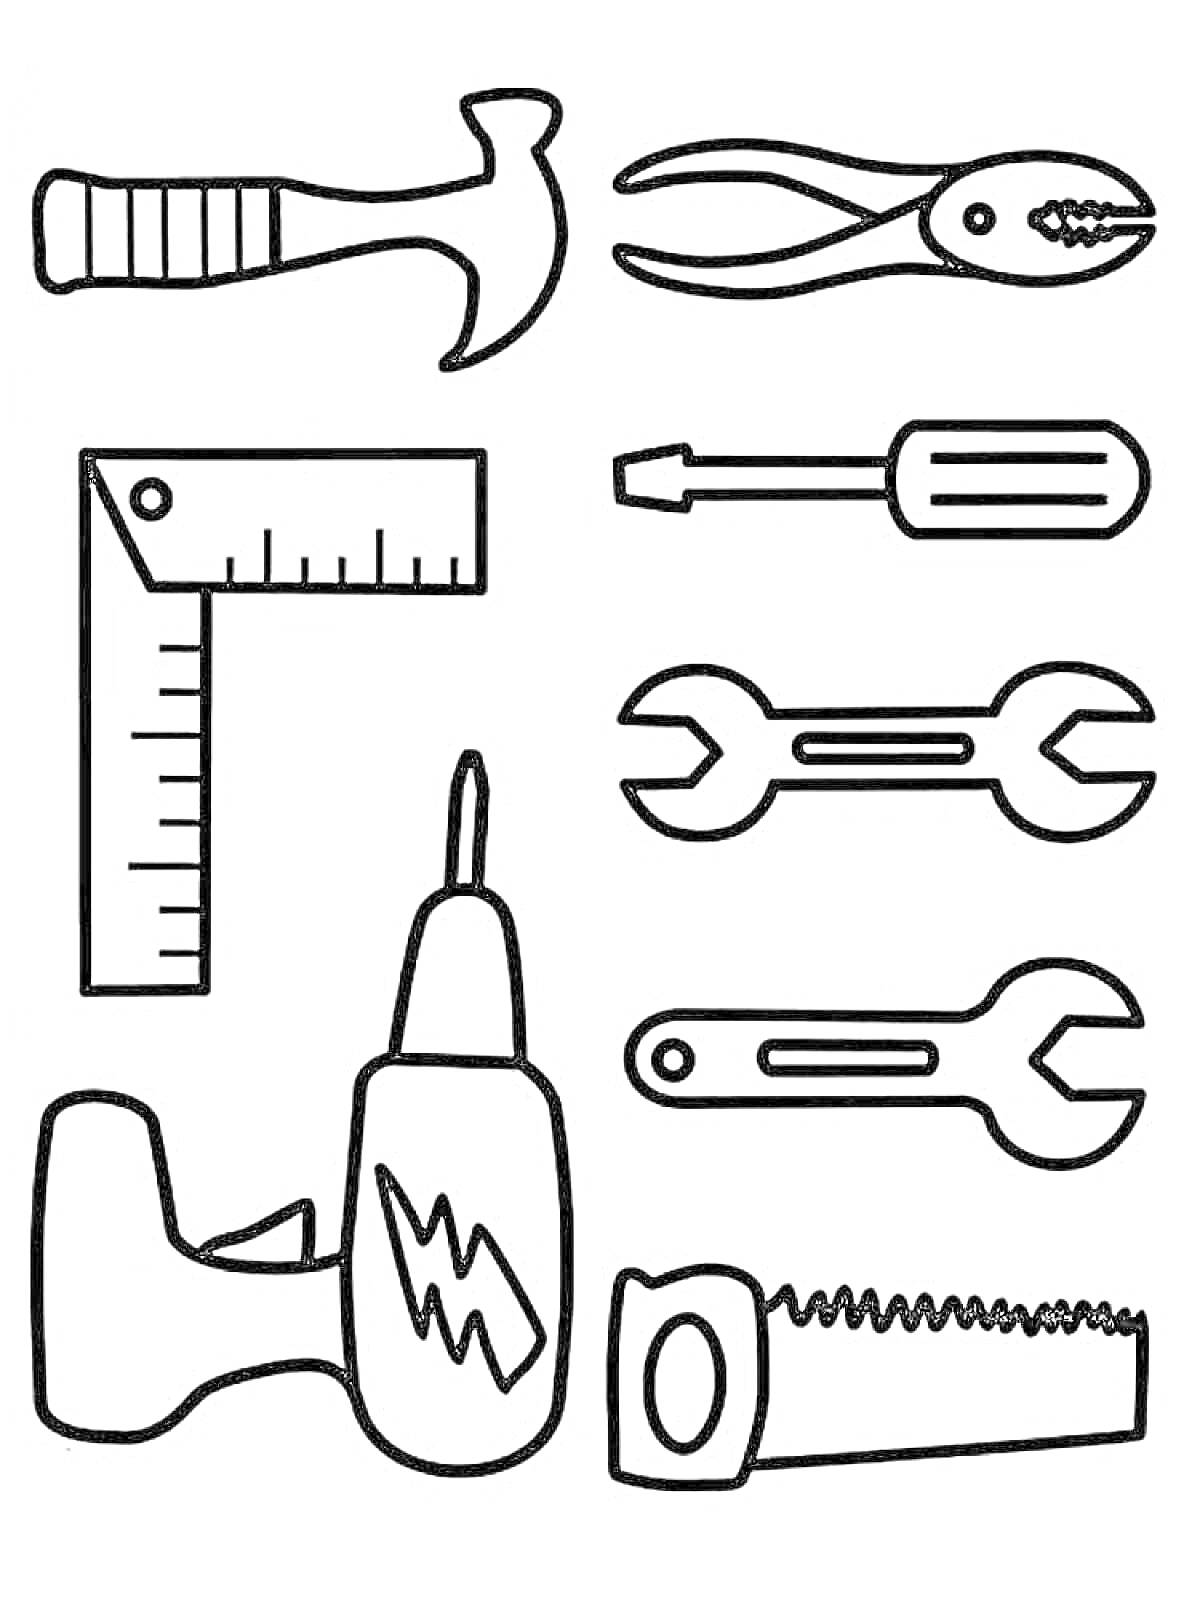 Раскраска Раскраска с инструментами для детей - молоток, плоскогубцы, угольник, отвёртка, гаечные ключи, дрель, ножовка